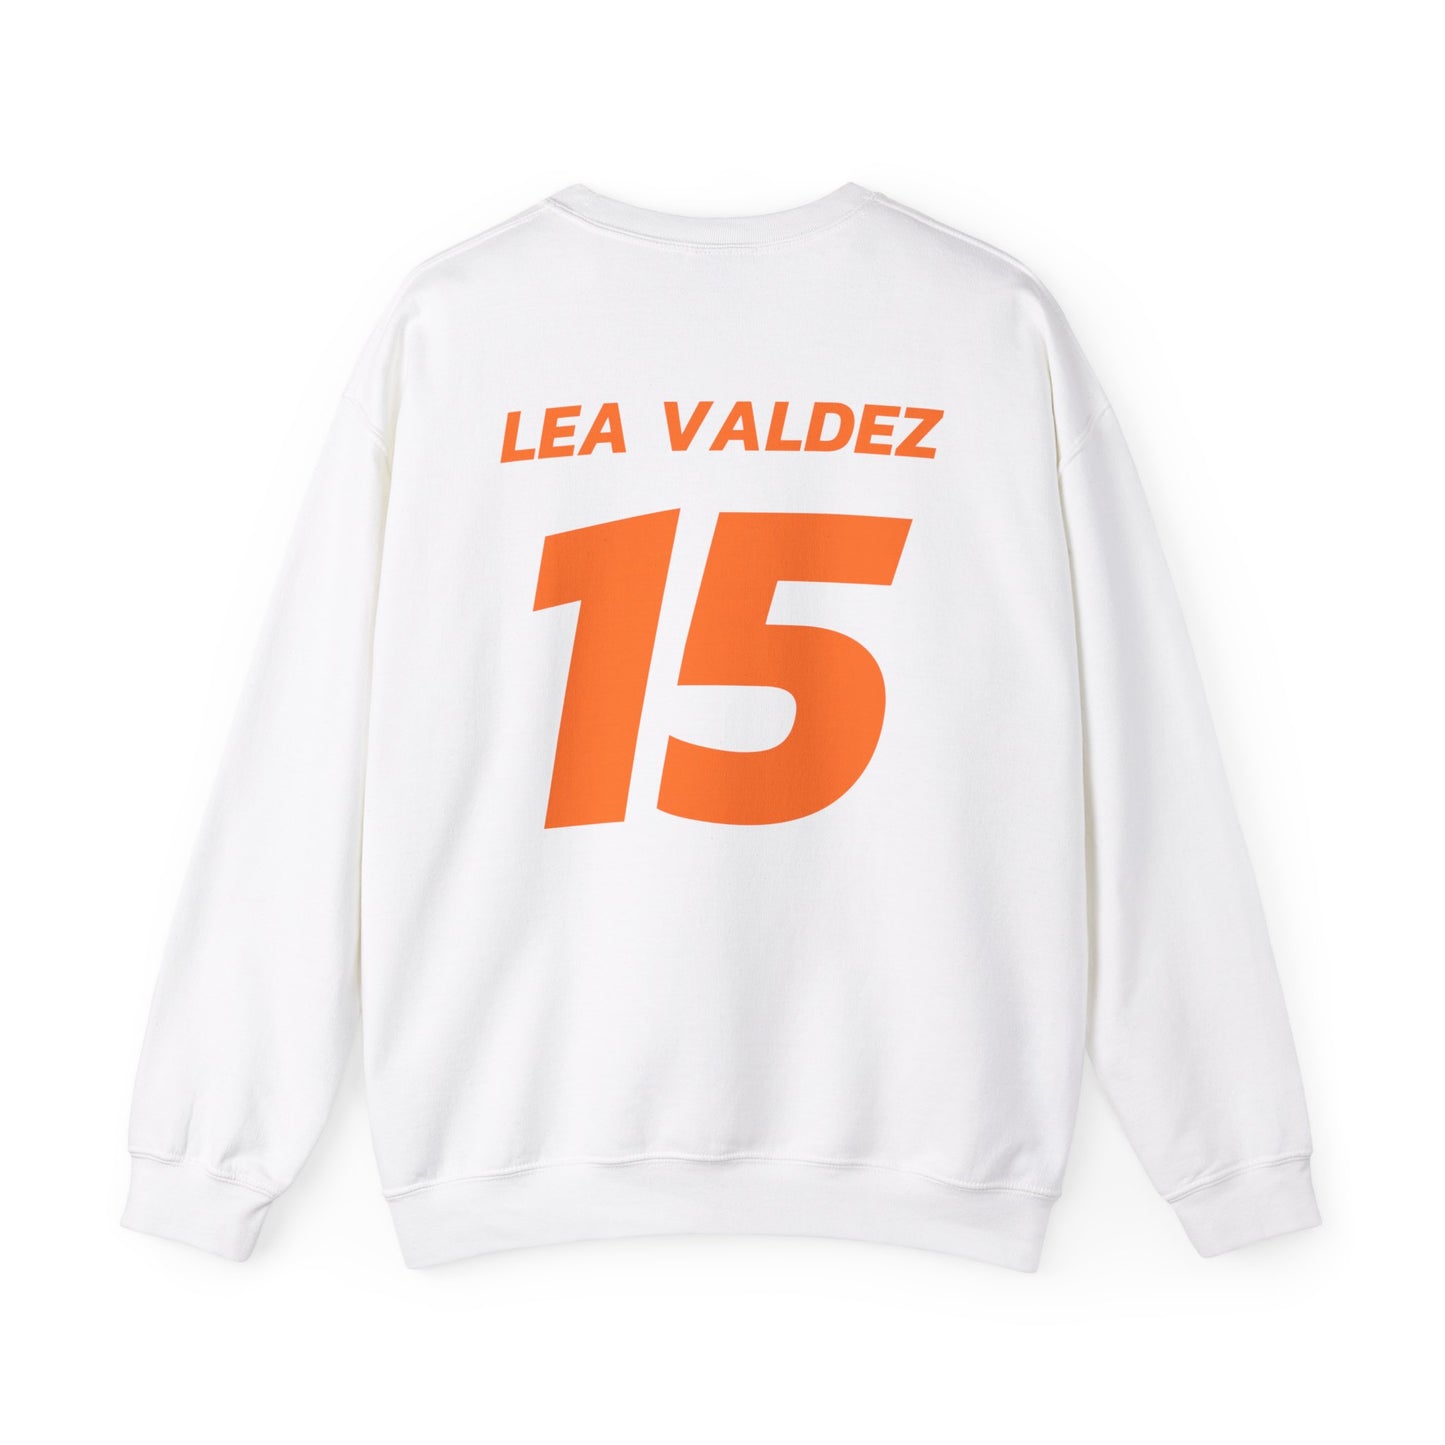 Lea Valdez: Essential Crewneck